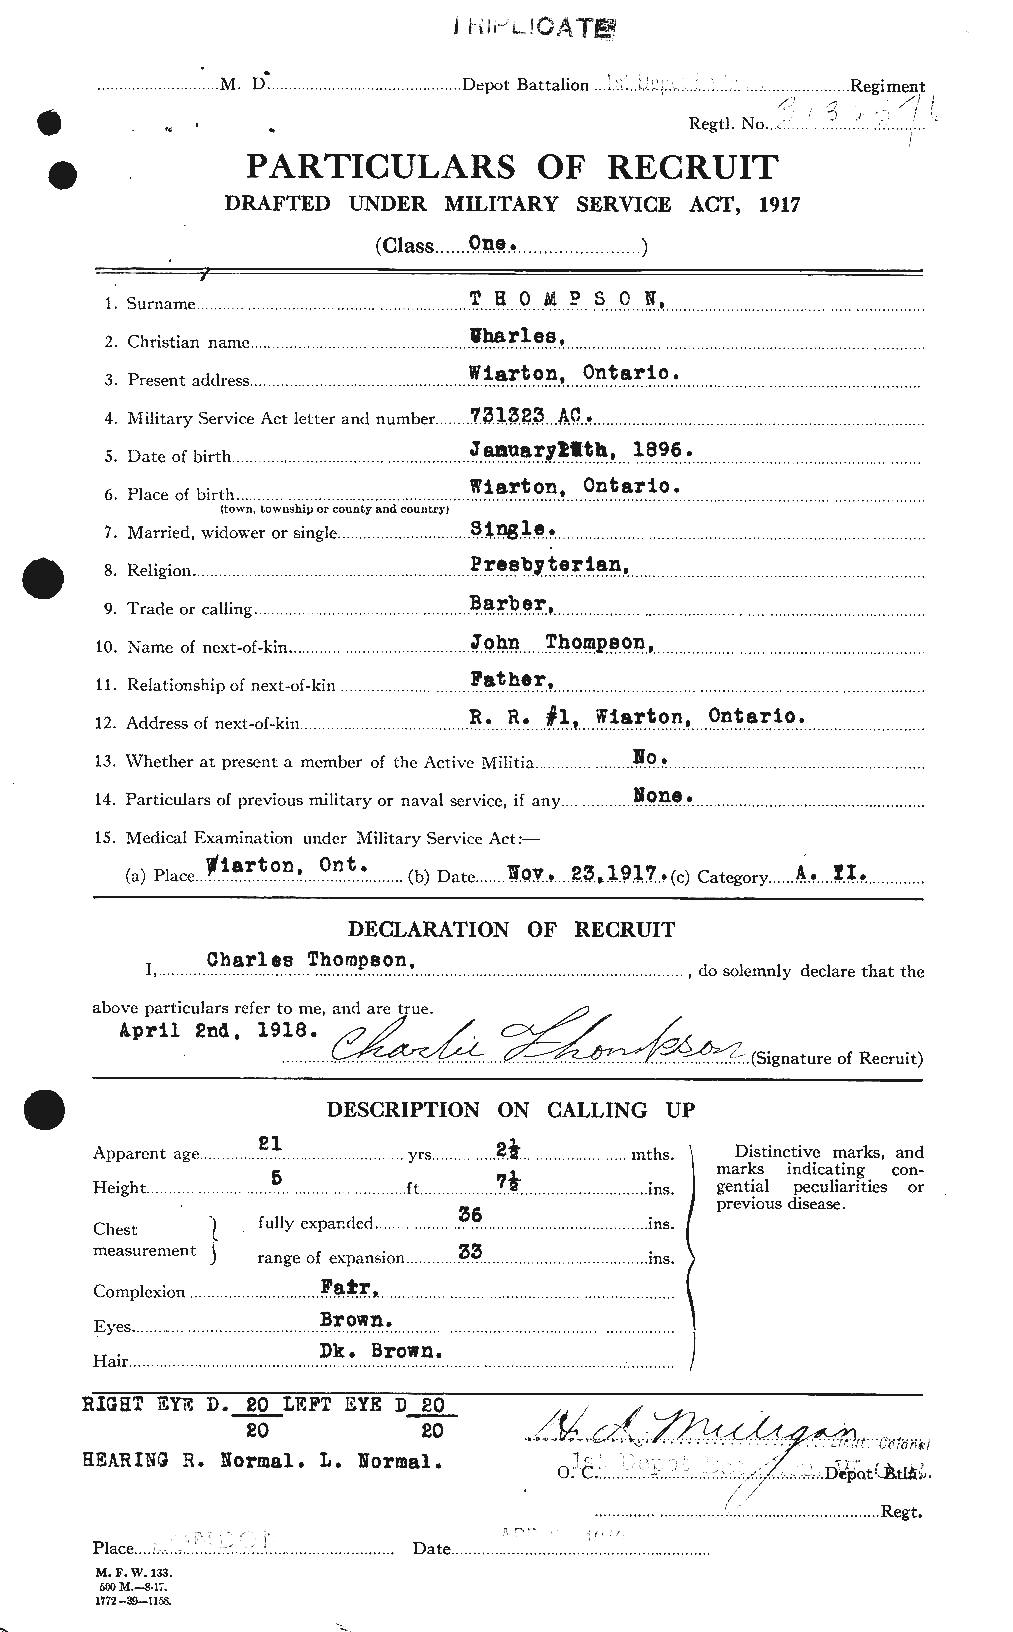 Dossiers du Personnel de la Première Guerre mondiale - CEC 630354a